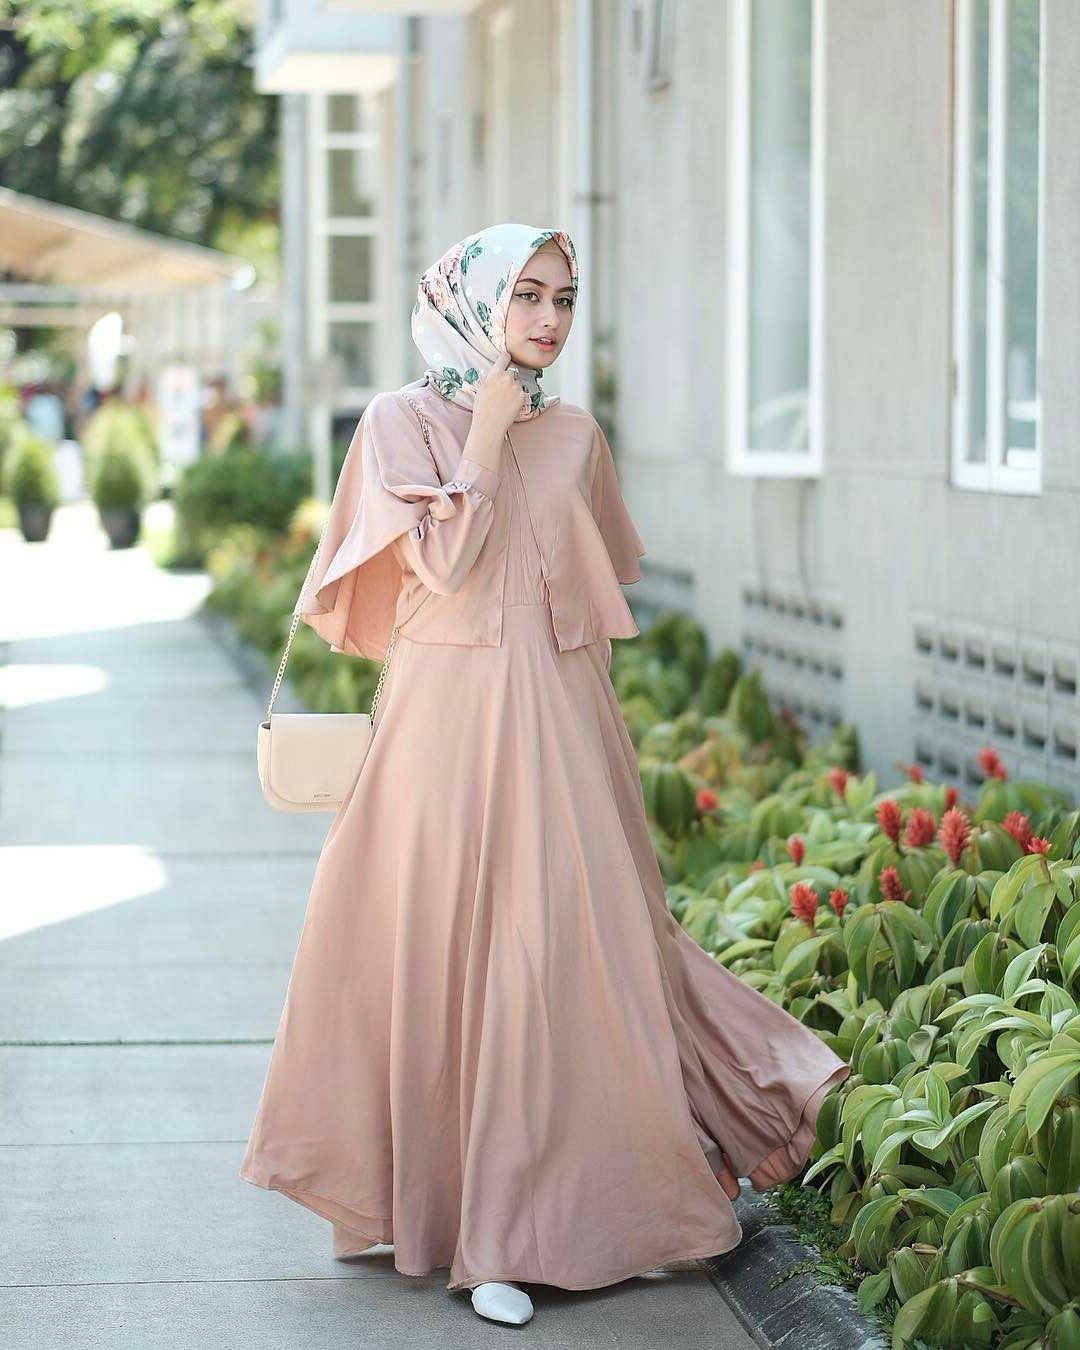 Design Model Baju Lebaran Muslim 2018 9fdy 21 Model Gamis Lebaran 2018 Desain Elegan Casual Dan Modern